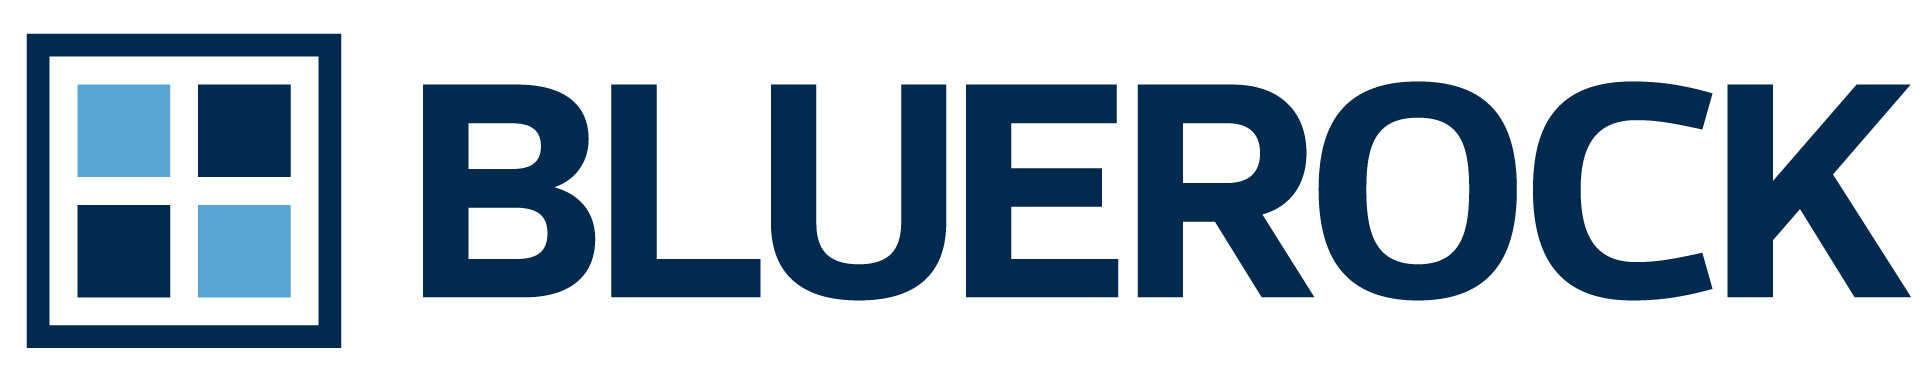 Bluerock Capital Markets, LLC logo